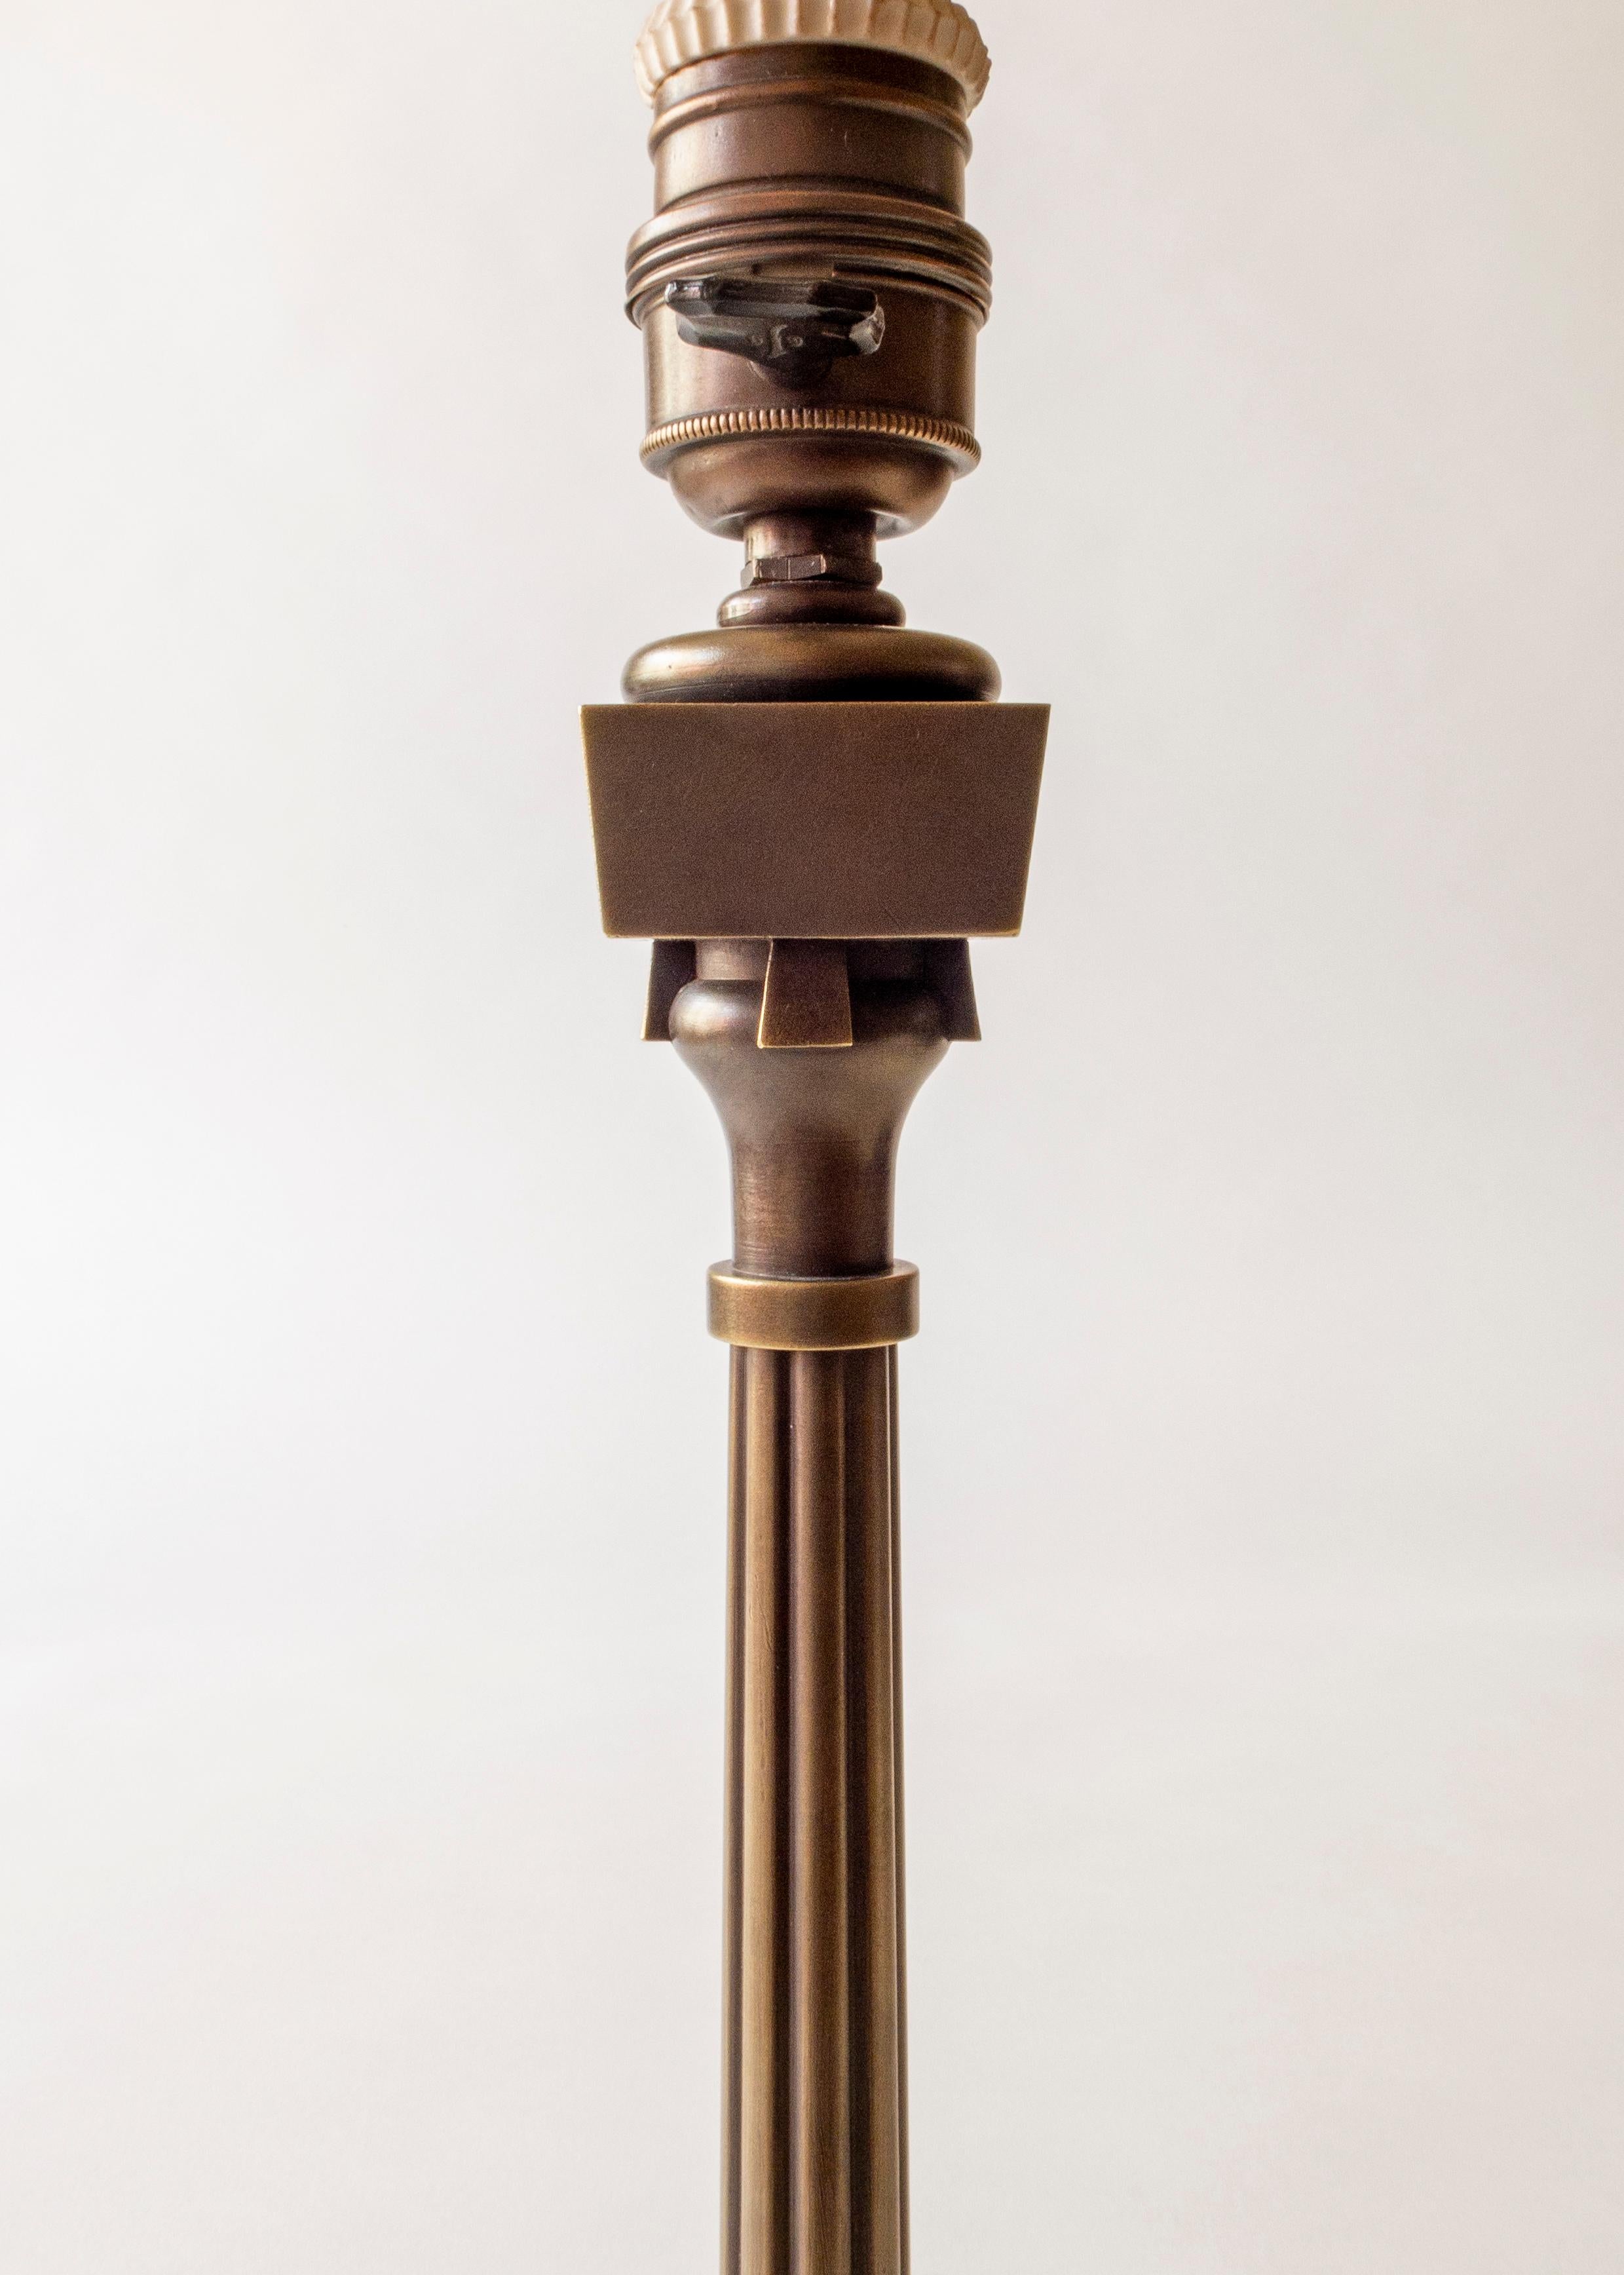 Thorvald Bindesbøll, Small Danish Patinated Brass Jugend Table Lamp (Jugendstil)